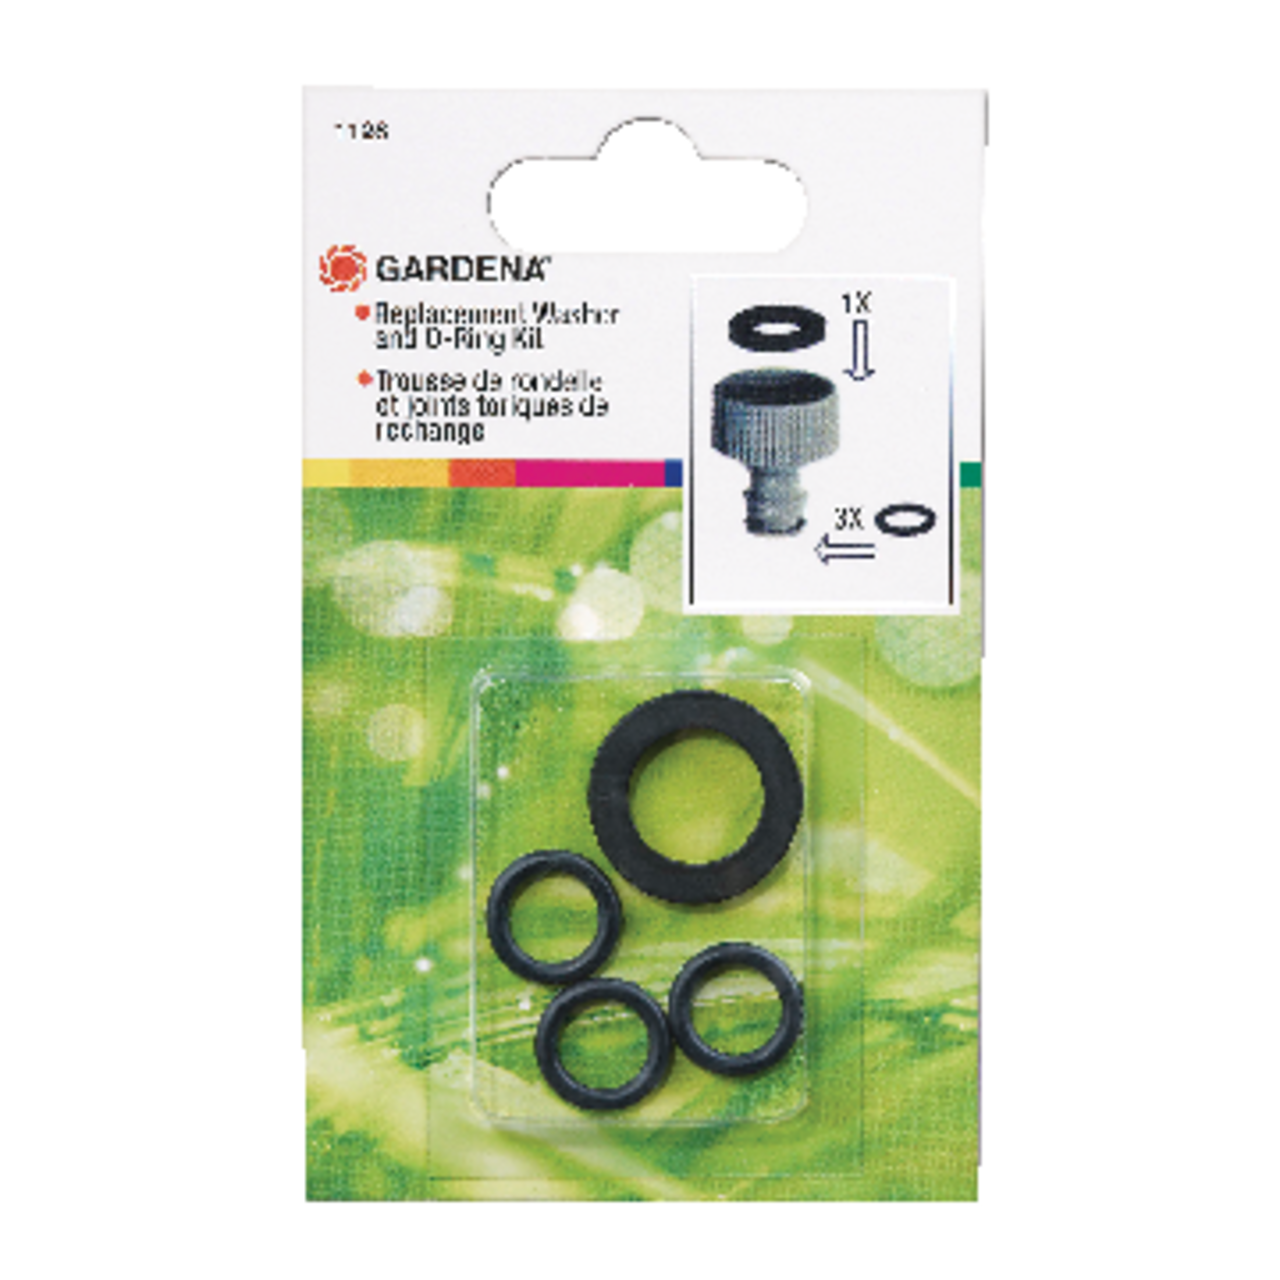  Liberty Garden 4000-ORING Replacement Kit O-Ring